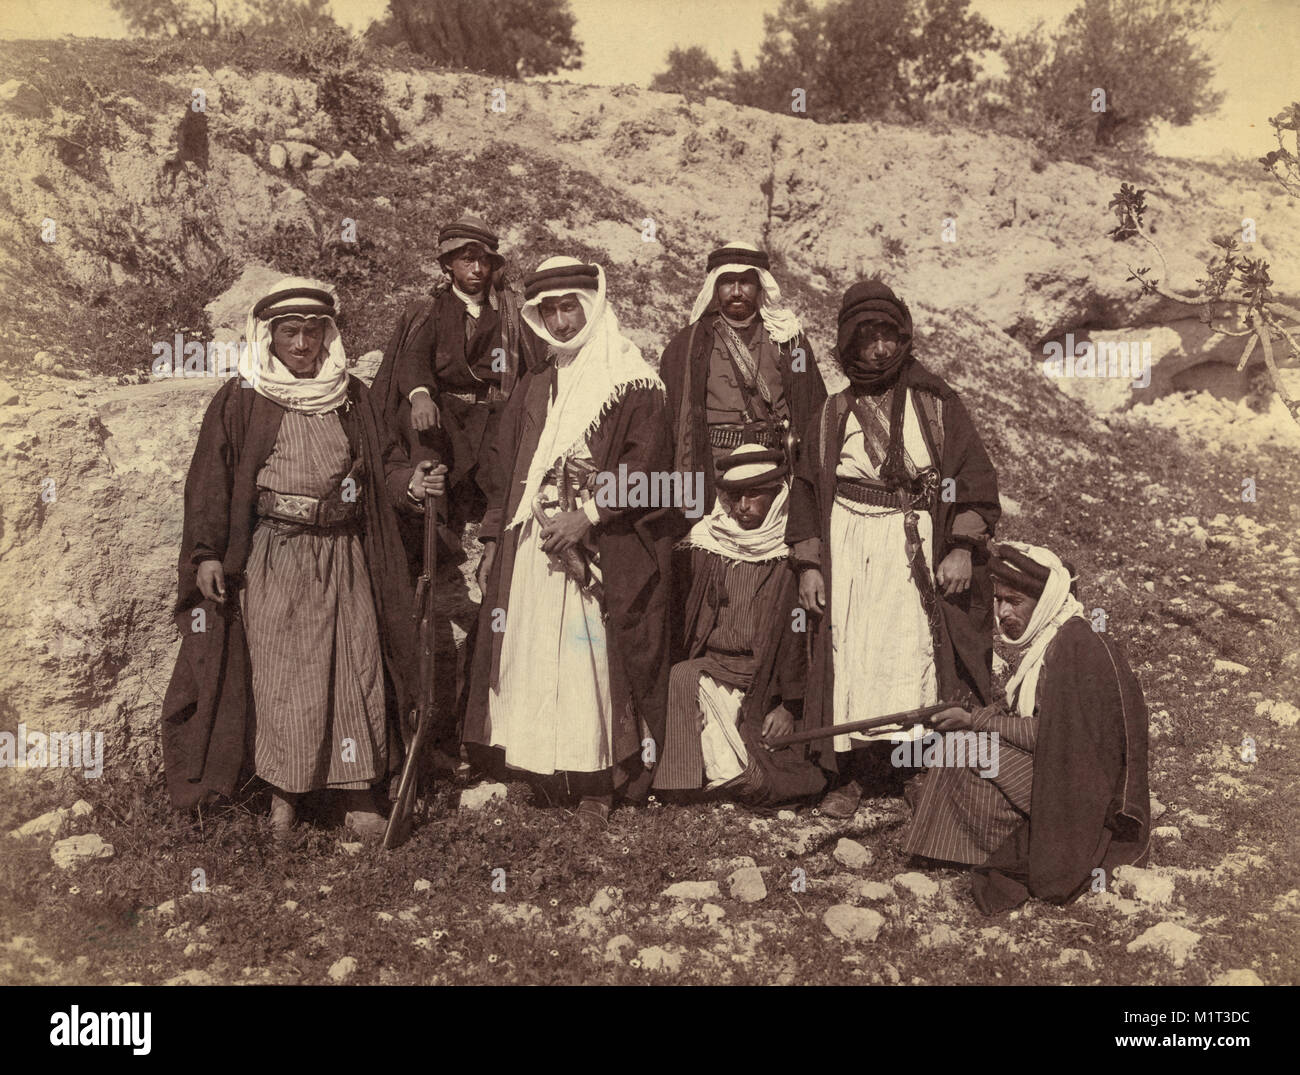 Bedouin Männer von Arakat Stamm, Portrait in der felsigen Landschaft, mit Schwertern und mit Gewehren, American Colony Foto Abteilung, Anfang 1900 Stockfoto